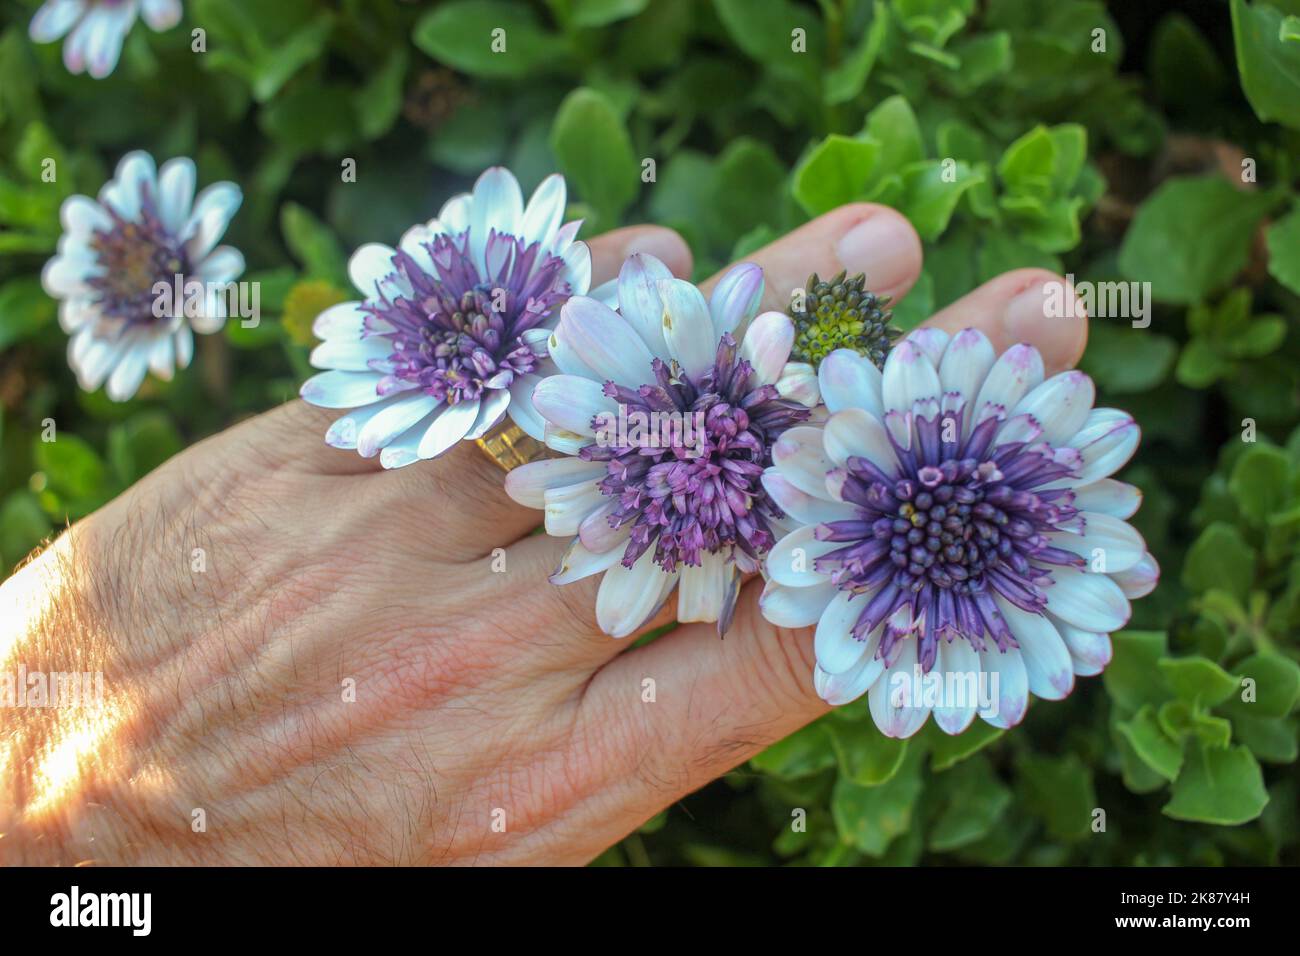 Schöne lila und weiße Osteospermum Blumen auf einem kaukasischen Personen Hände Stockfoto